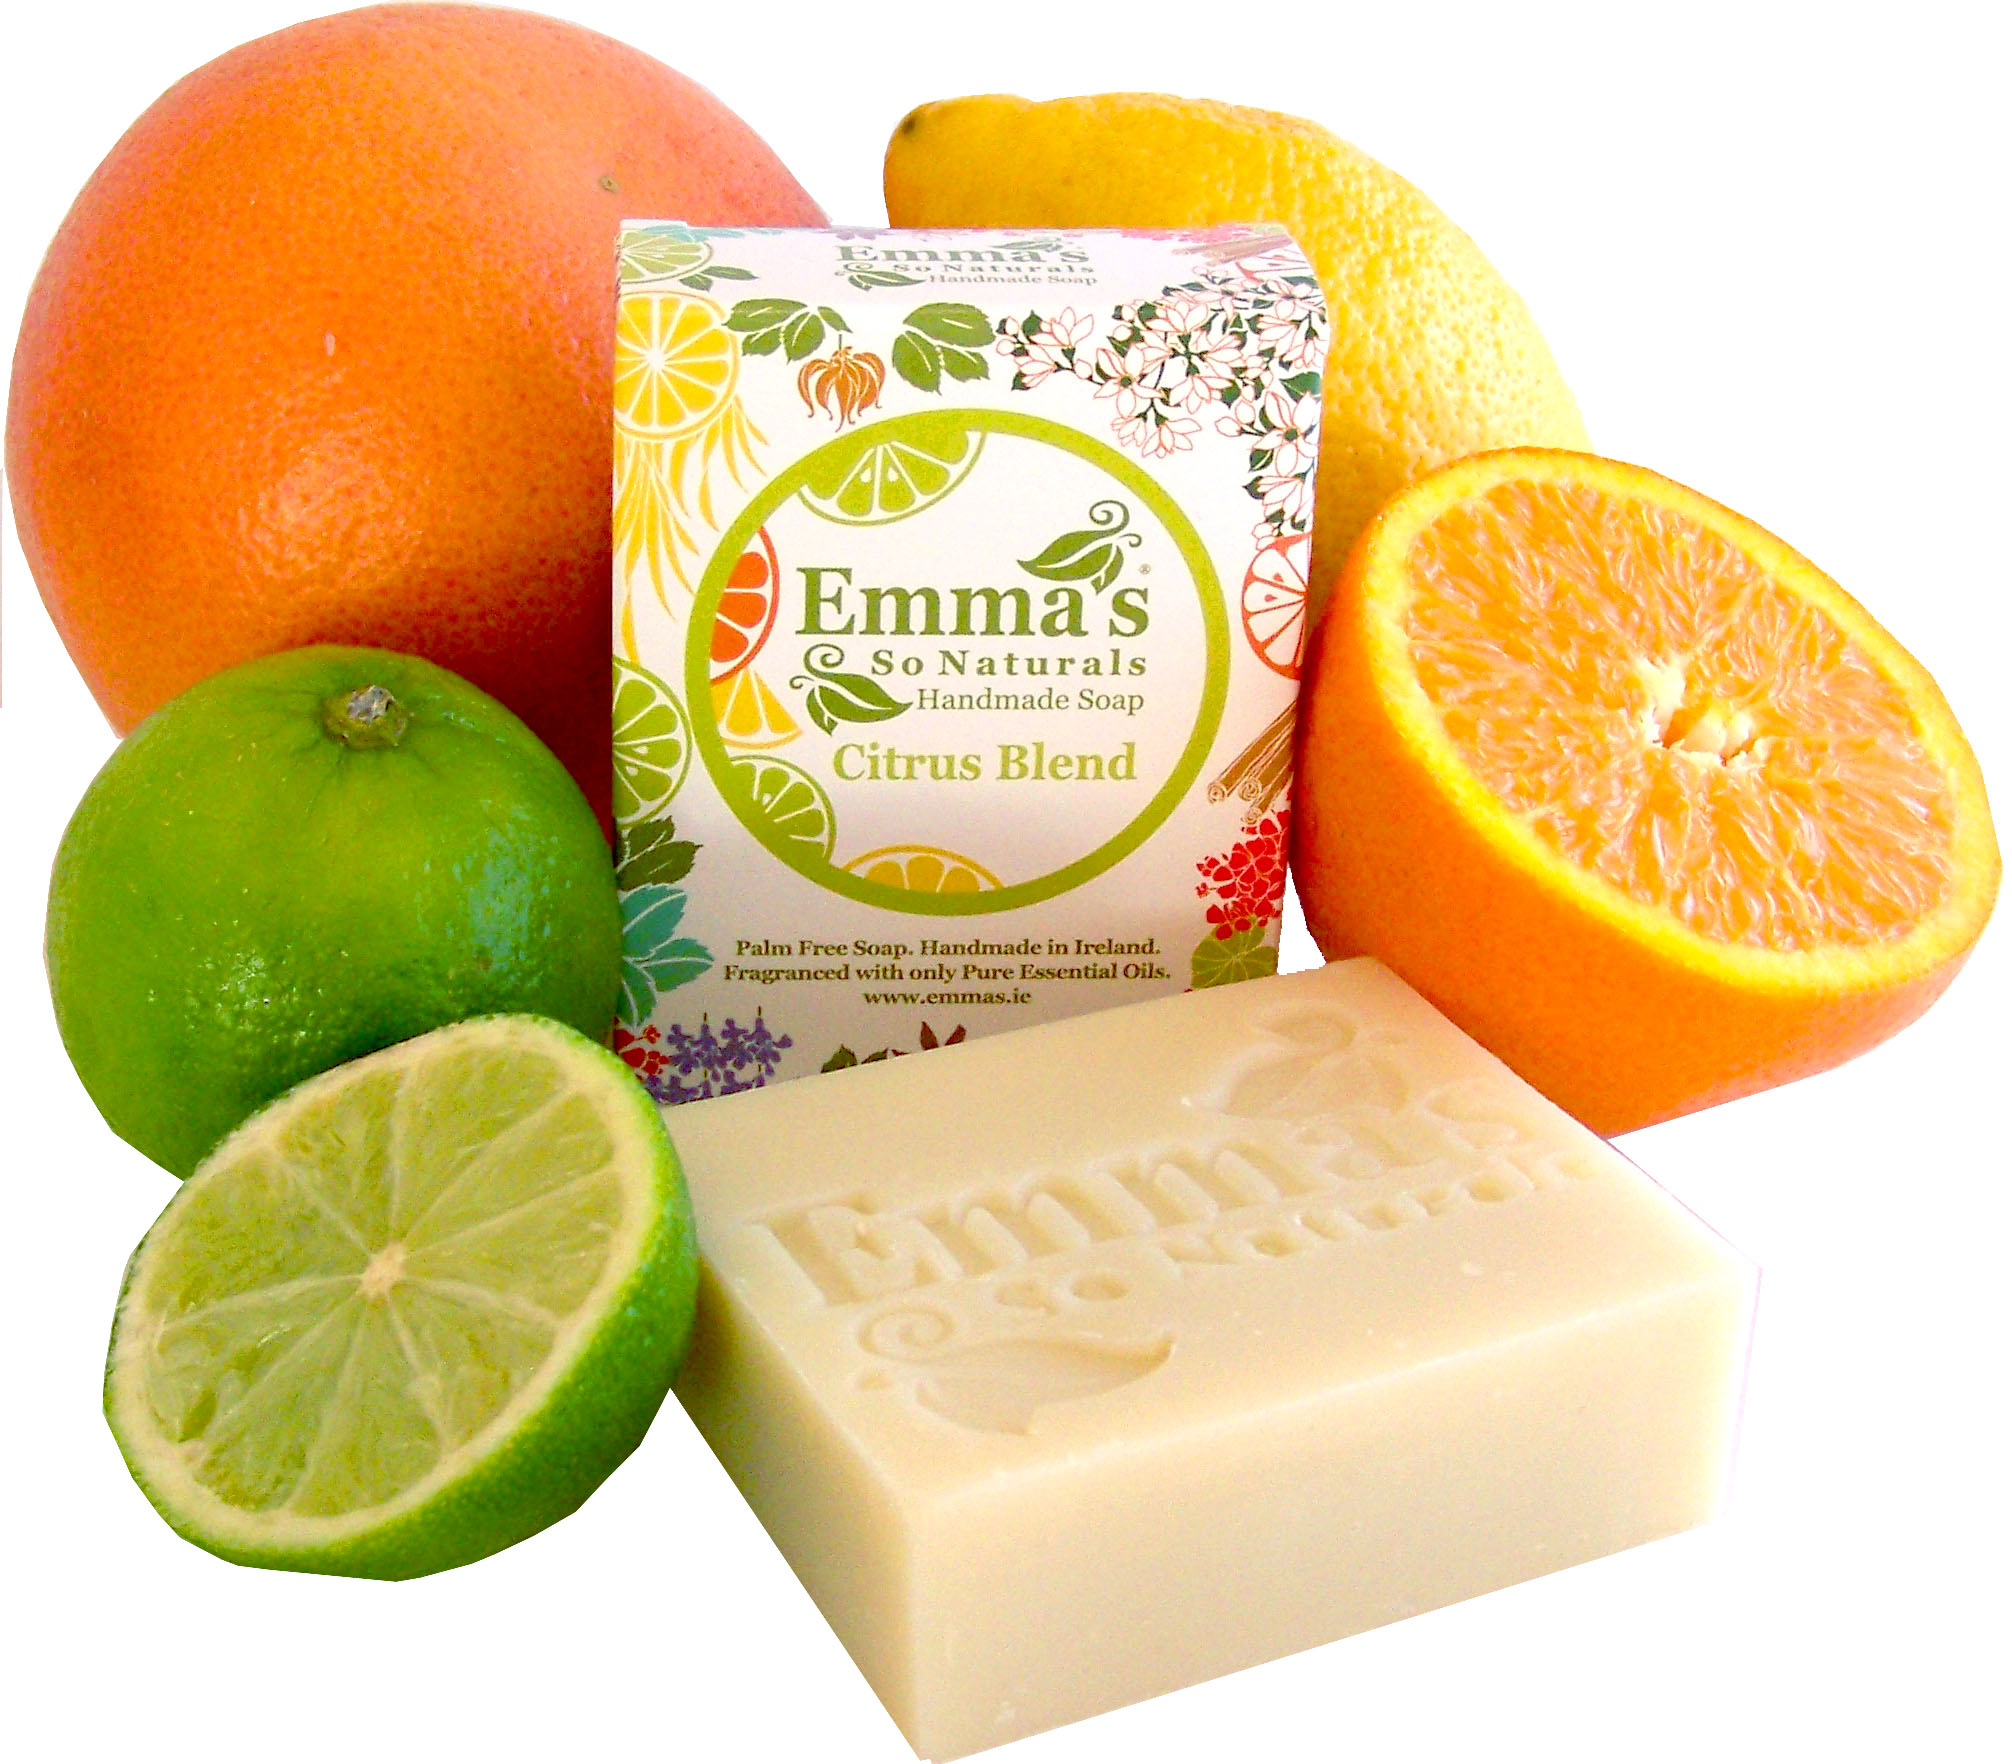 Emma's So Naturals Citrus Blend Soap